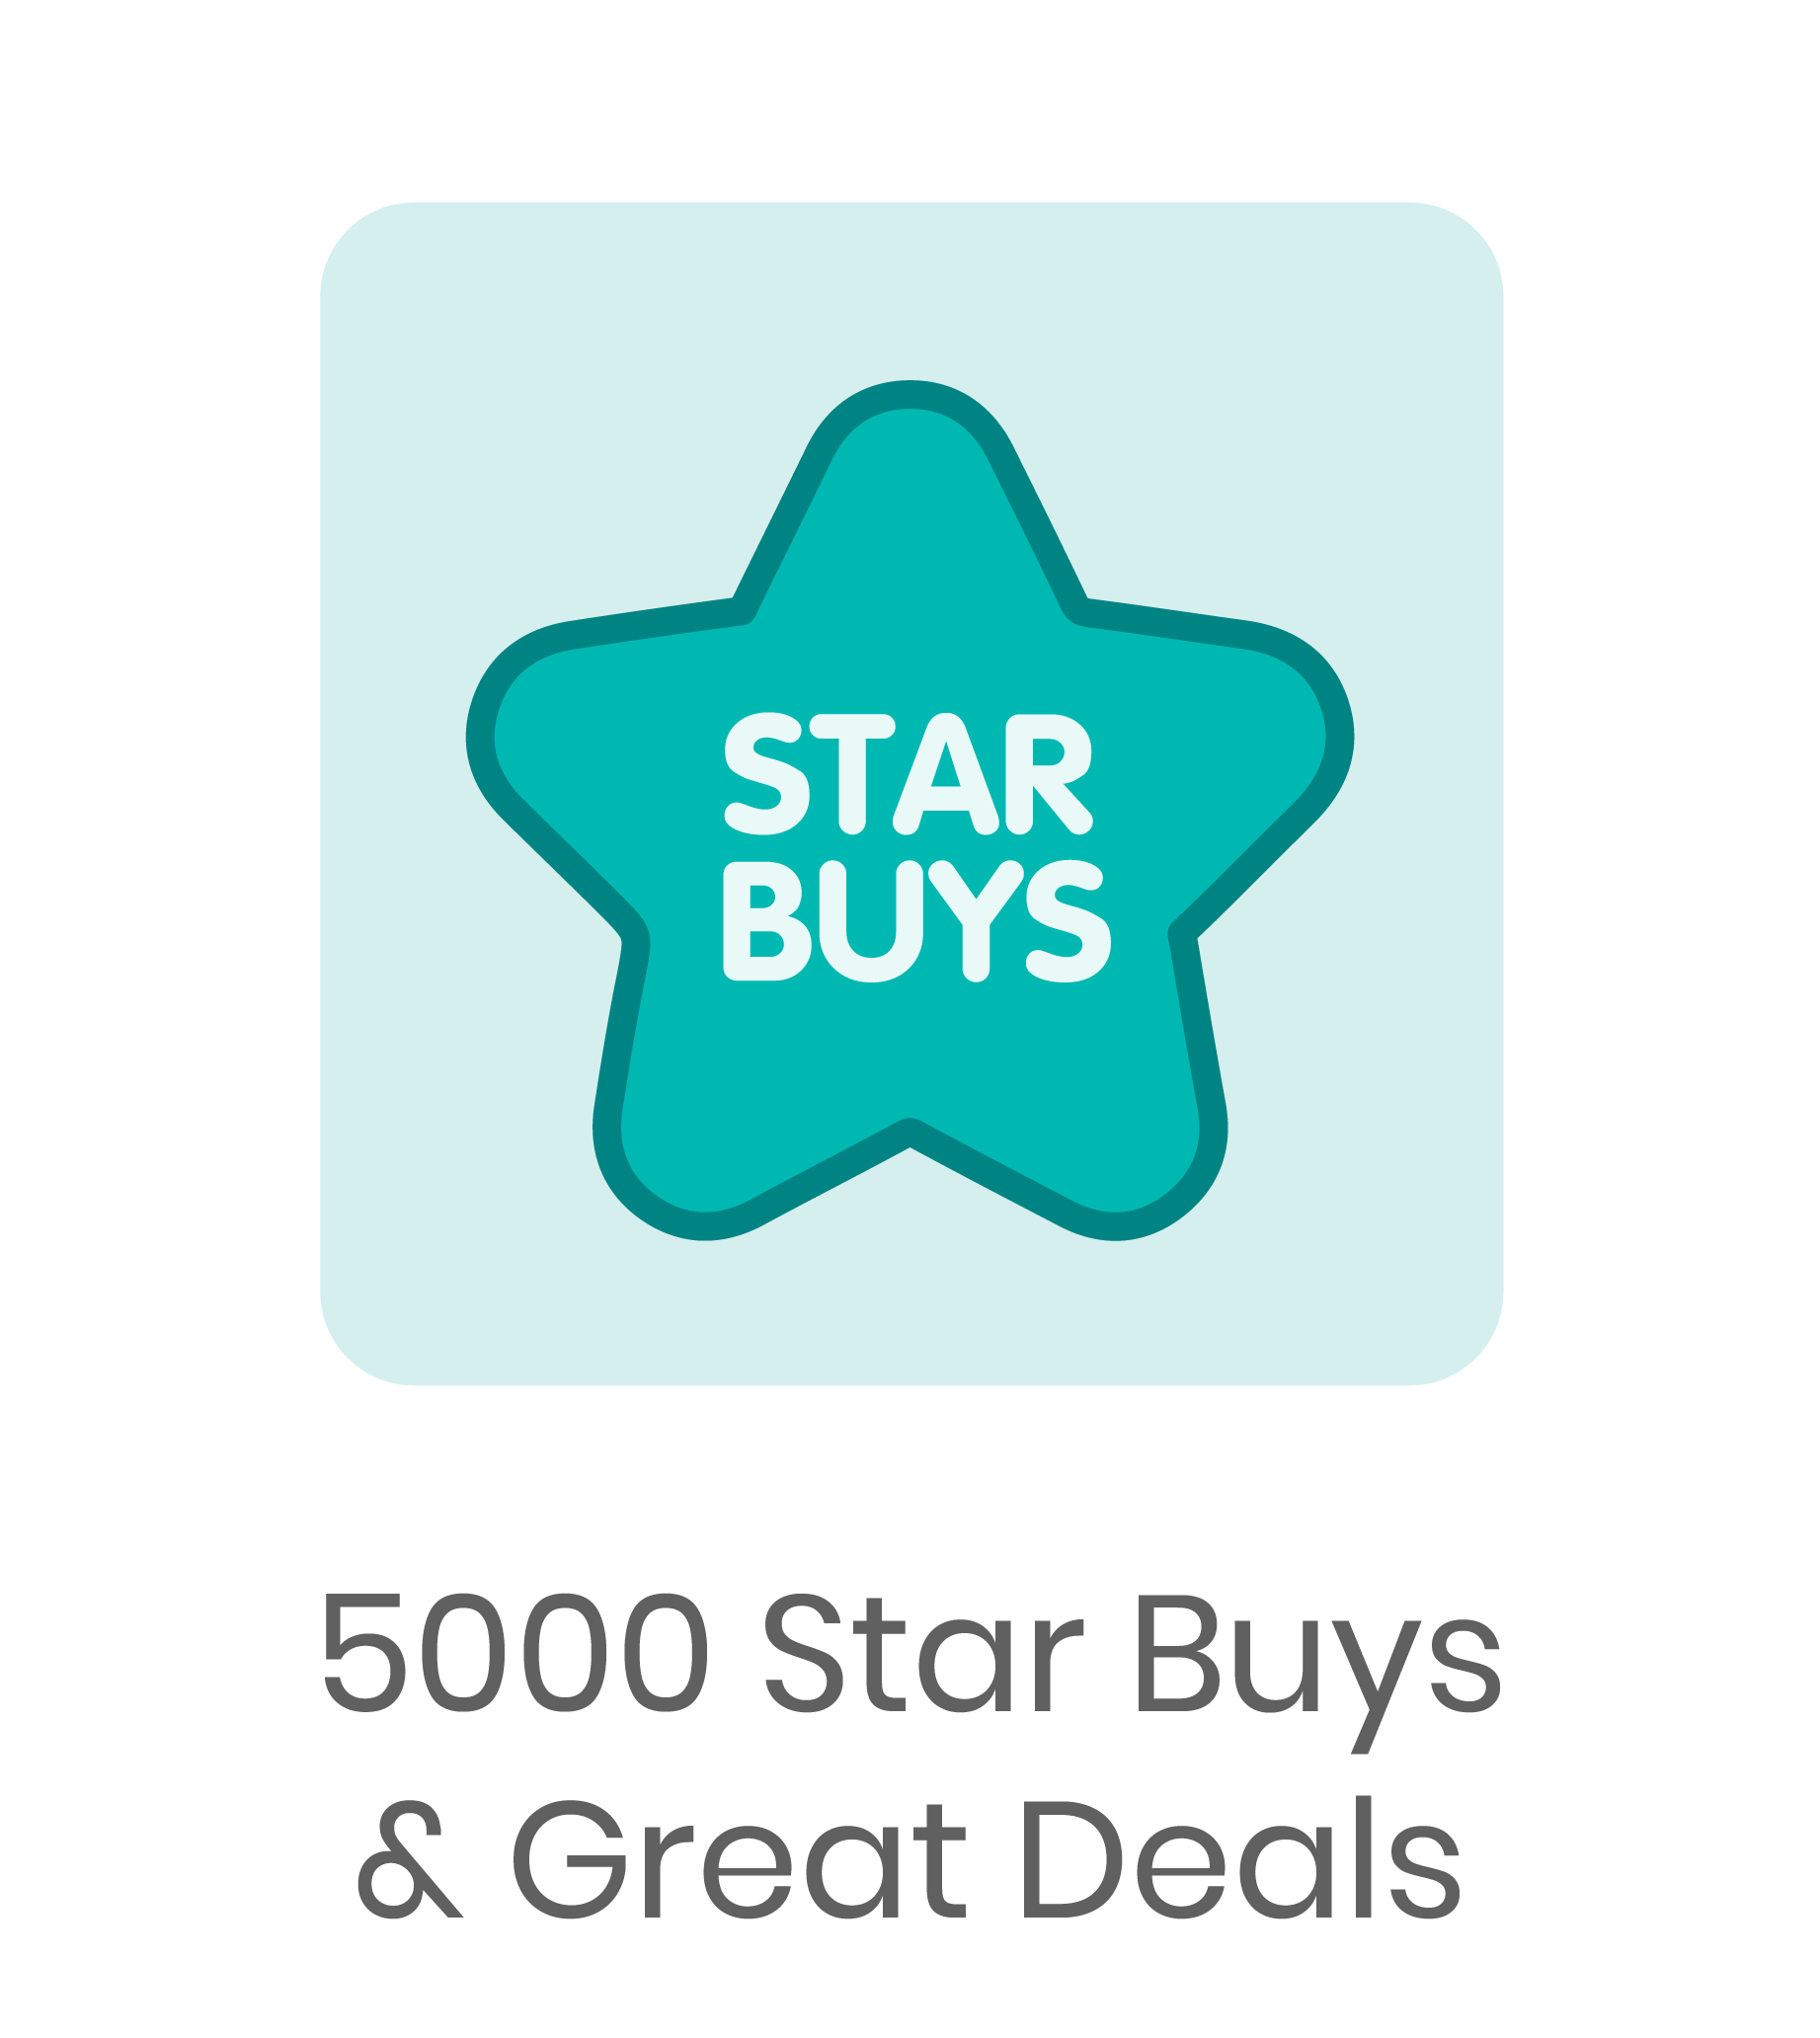 5000 Starbuy+ Great Deals